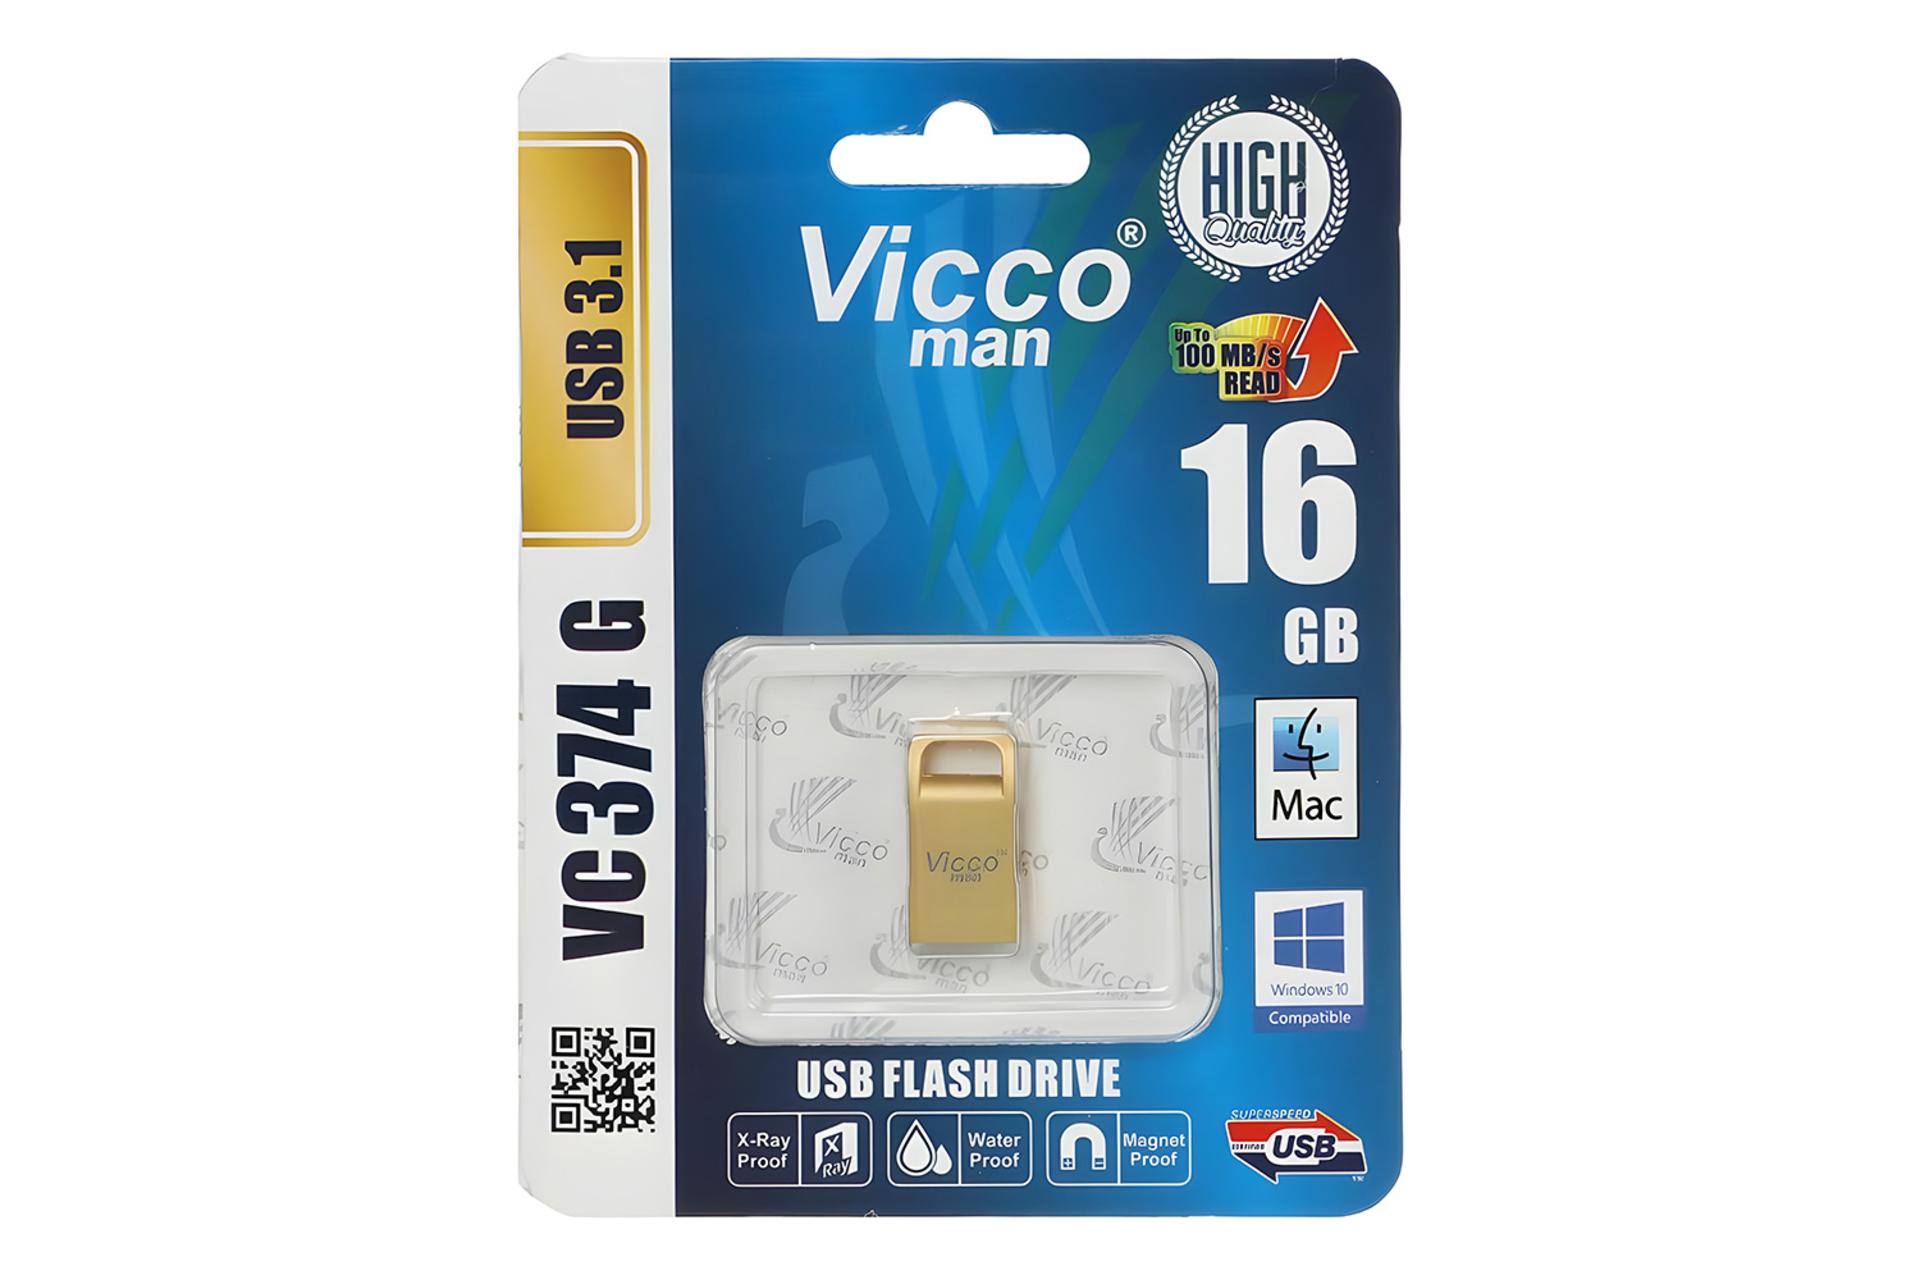 جعبه فلش مموری ویکومن Viccoman VC374 G 16GB USB 3.1